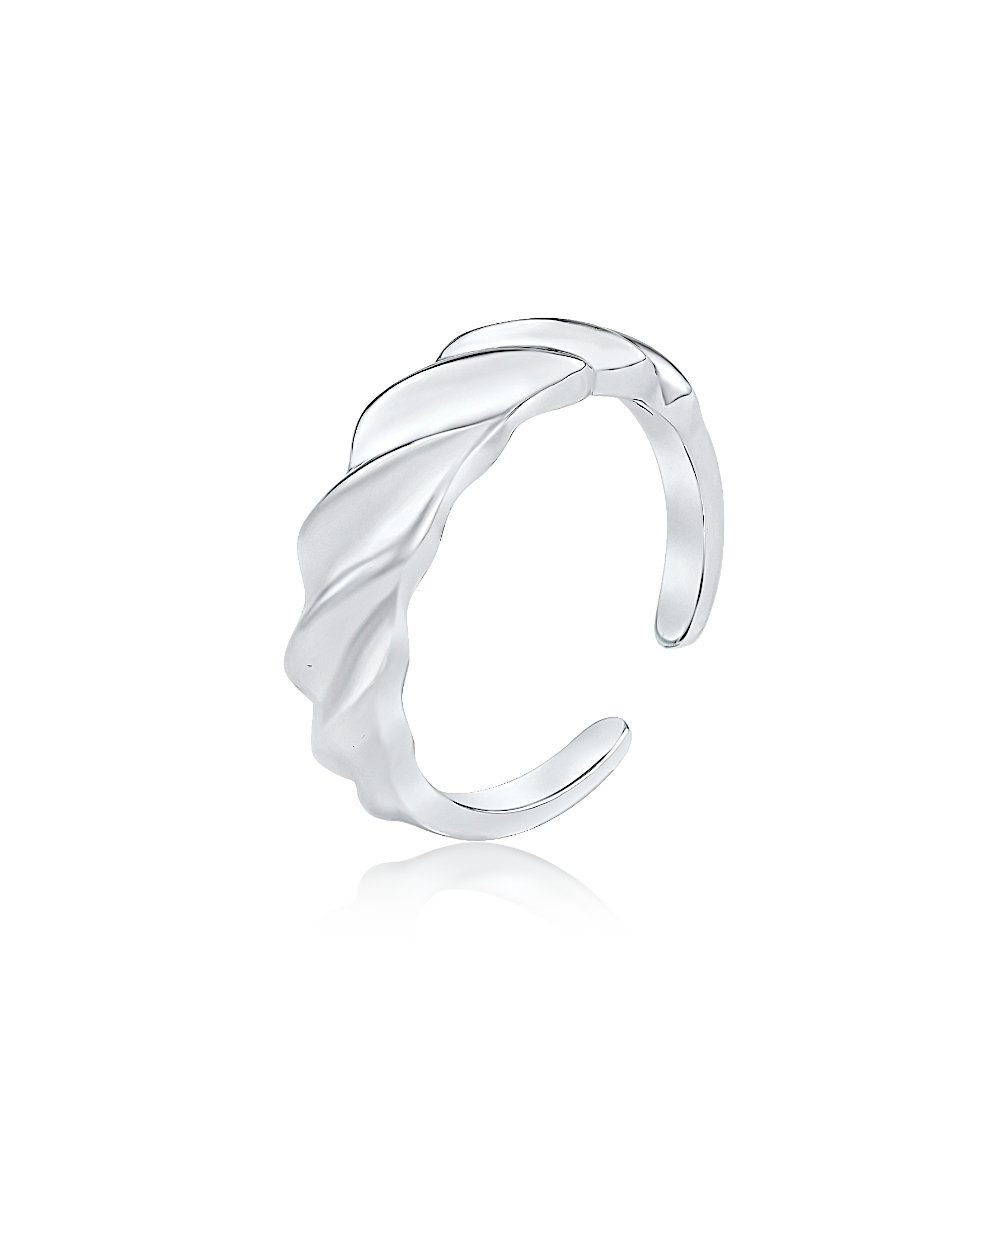 DANIEL CLIFFORD Silberring 'Ally' Damen Ring Silber 925 rhodiniert,  Silberring größenverstellbar (inkl. Schmuckbox), größenverstellbar,  gedrehter Statement-Ring massiv